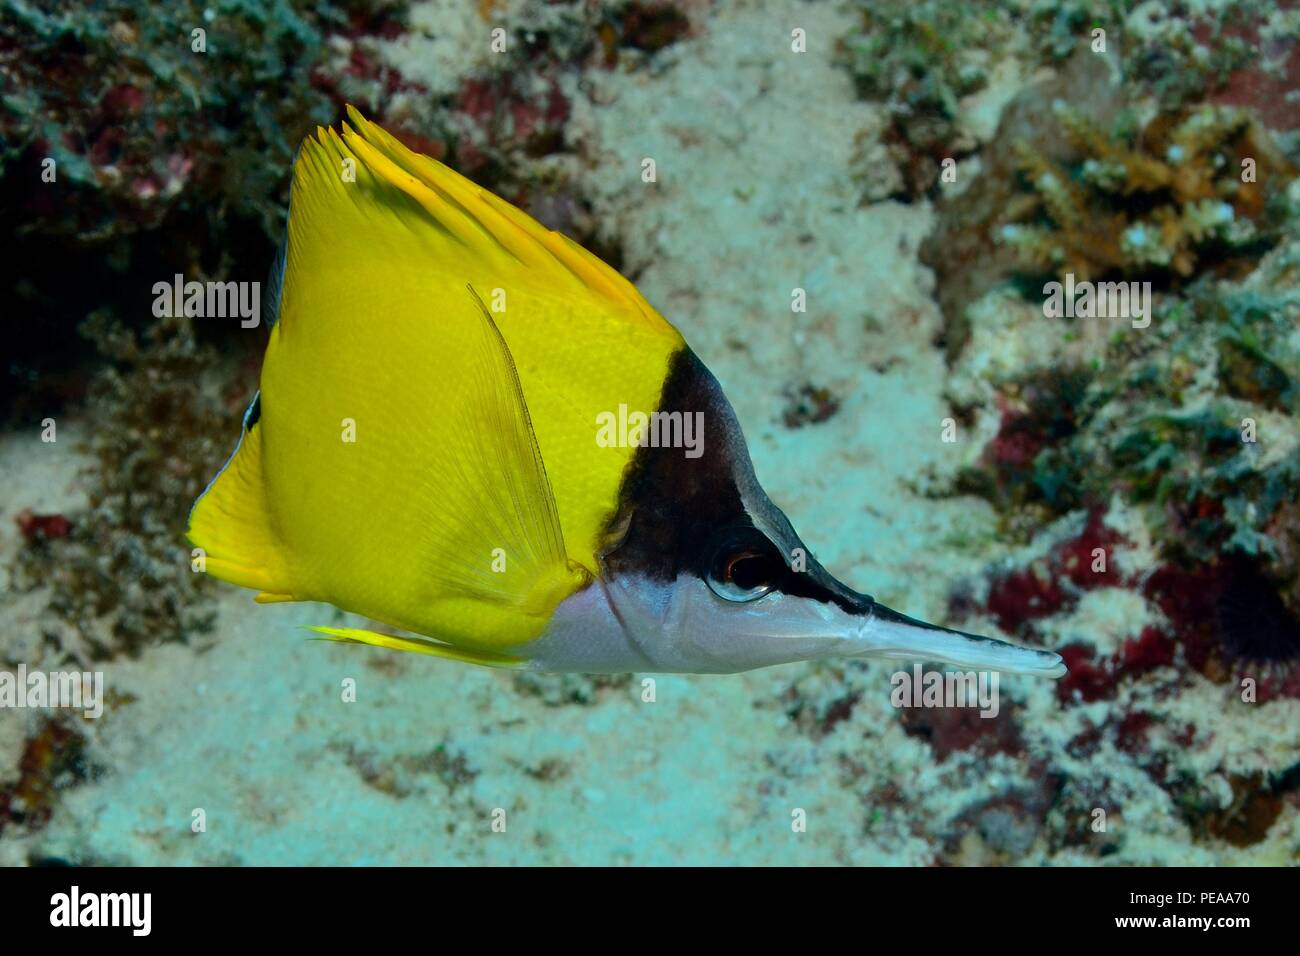 Forcipiger flavissimus, yellow longnose butterflyfish, Gelber Masken-Pinzettfisch, Malediven, Indischer Ozean, maldives, Indian Ocean Stock Photo